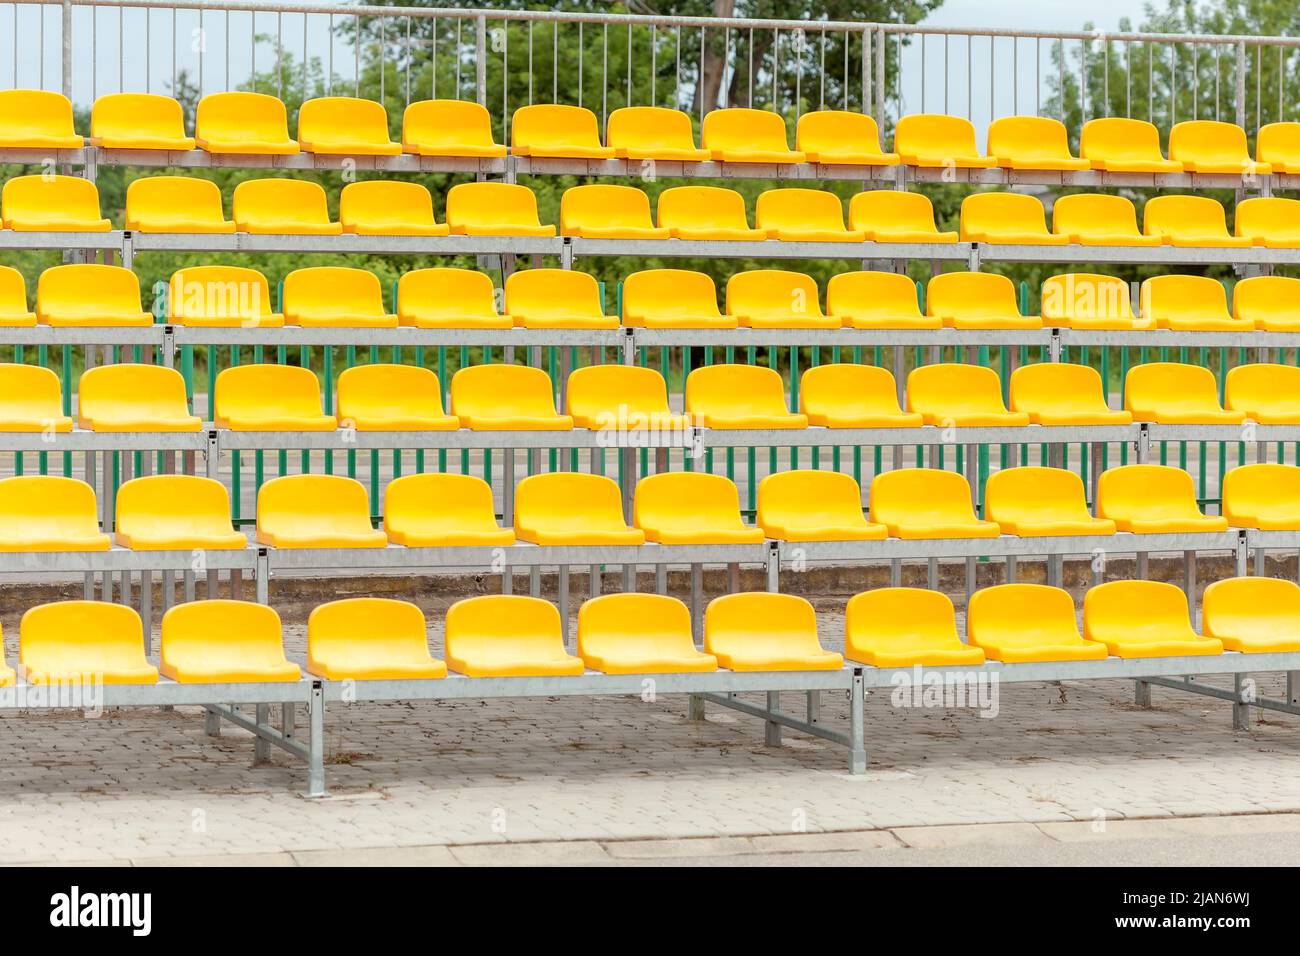 Leere Stadionstände, Stühle, Zuschauersitze in der gelben Kunststoffarena auf einem kleinen Fußballfeld, tagsüber, Pfanne, niemand. Keine Menschen, Sport ev Stockfoto